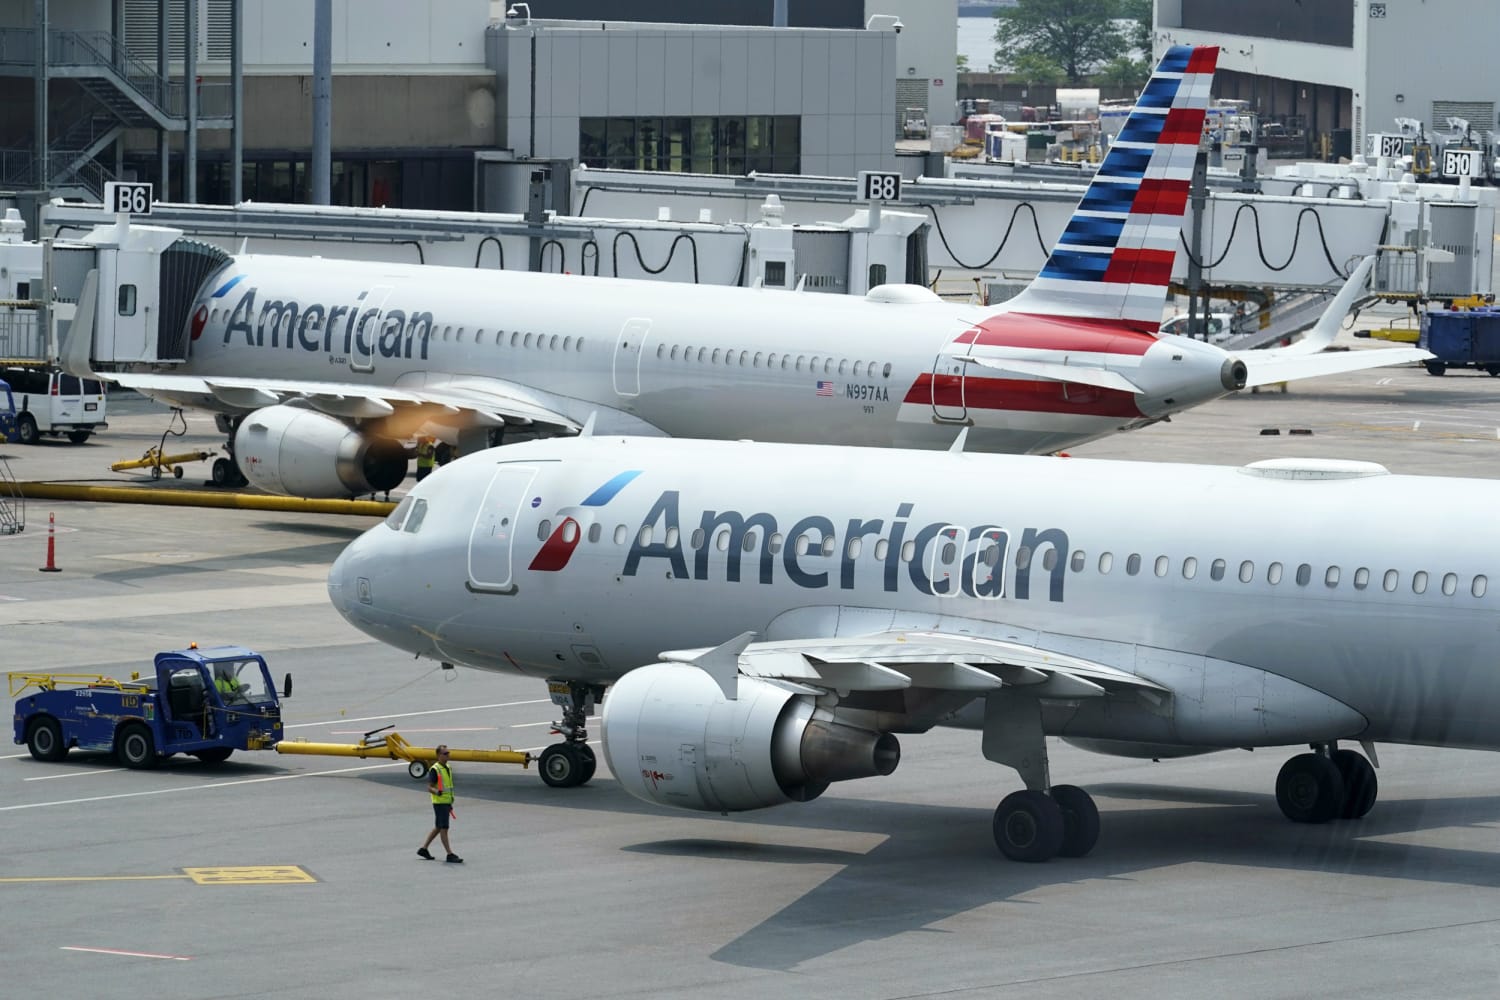 Een stewardess die ervan werd beschuldigd een meisje op te nemen in het toilet van het vliegtuig, werd gearresteerd